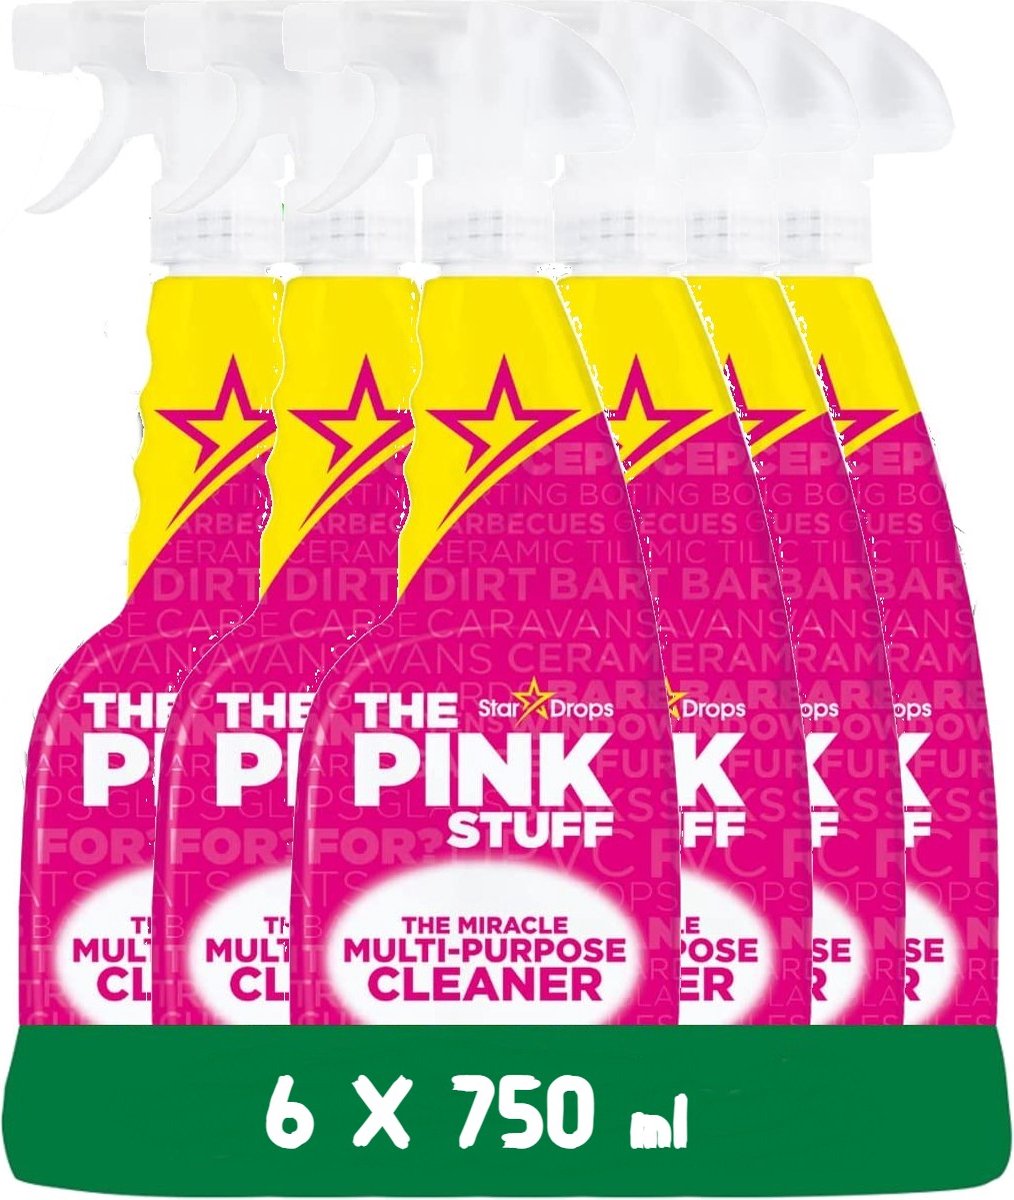 The Pink Stuff All-purpose Cleaner Spray - 6 x 750 ml opakowanie ekonomiczne - przyjazny dla środowiska